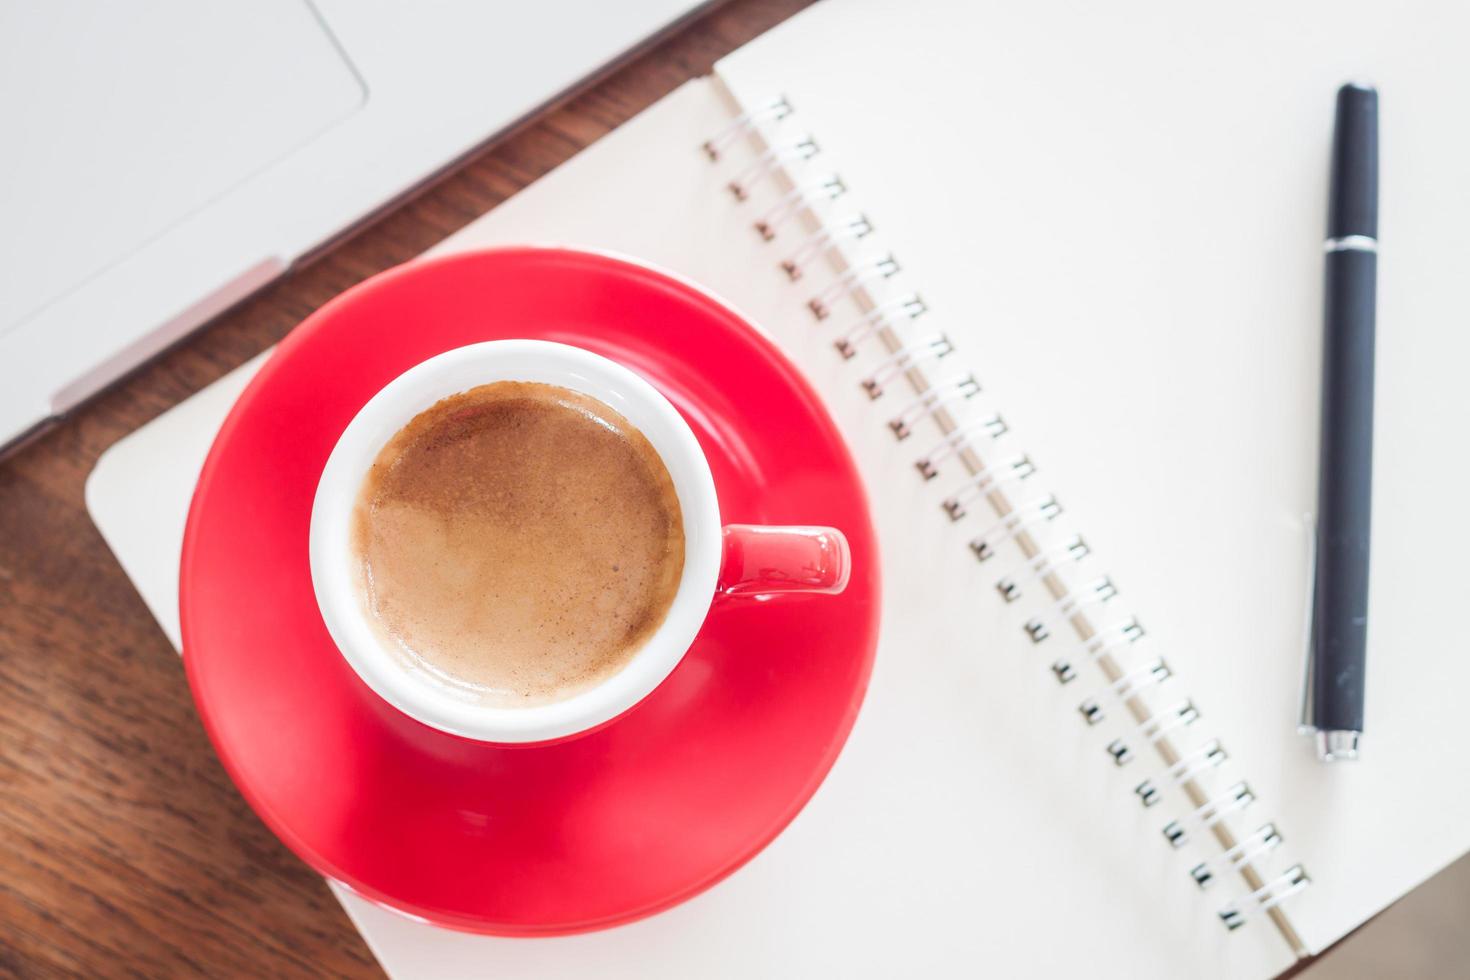 Vista superior de una taza de café roja y un bolígrafo en un cuaderno foto